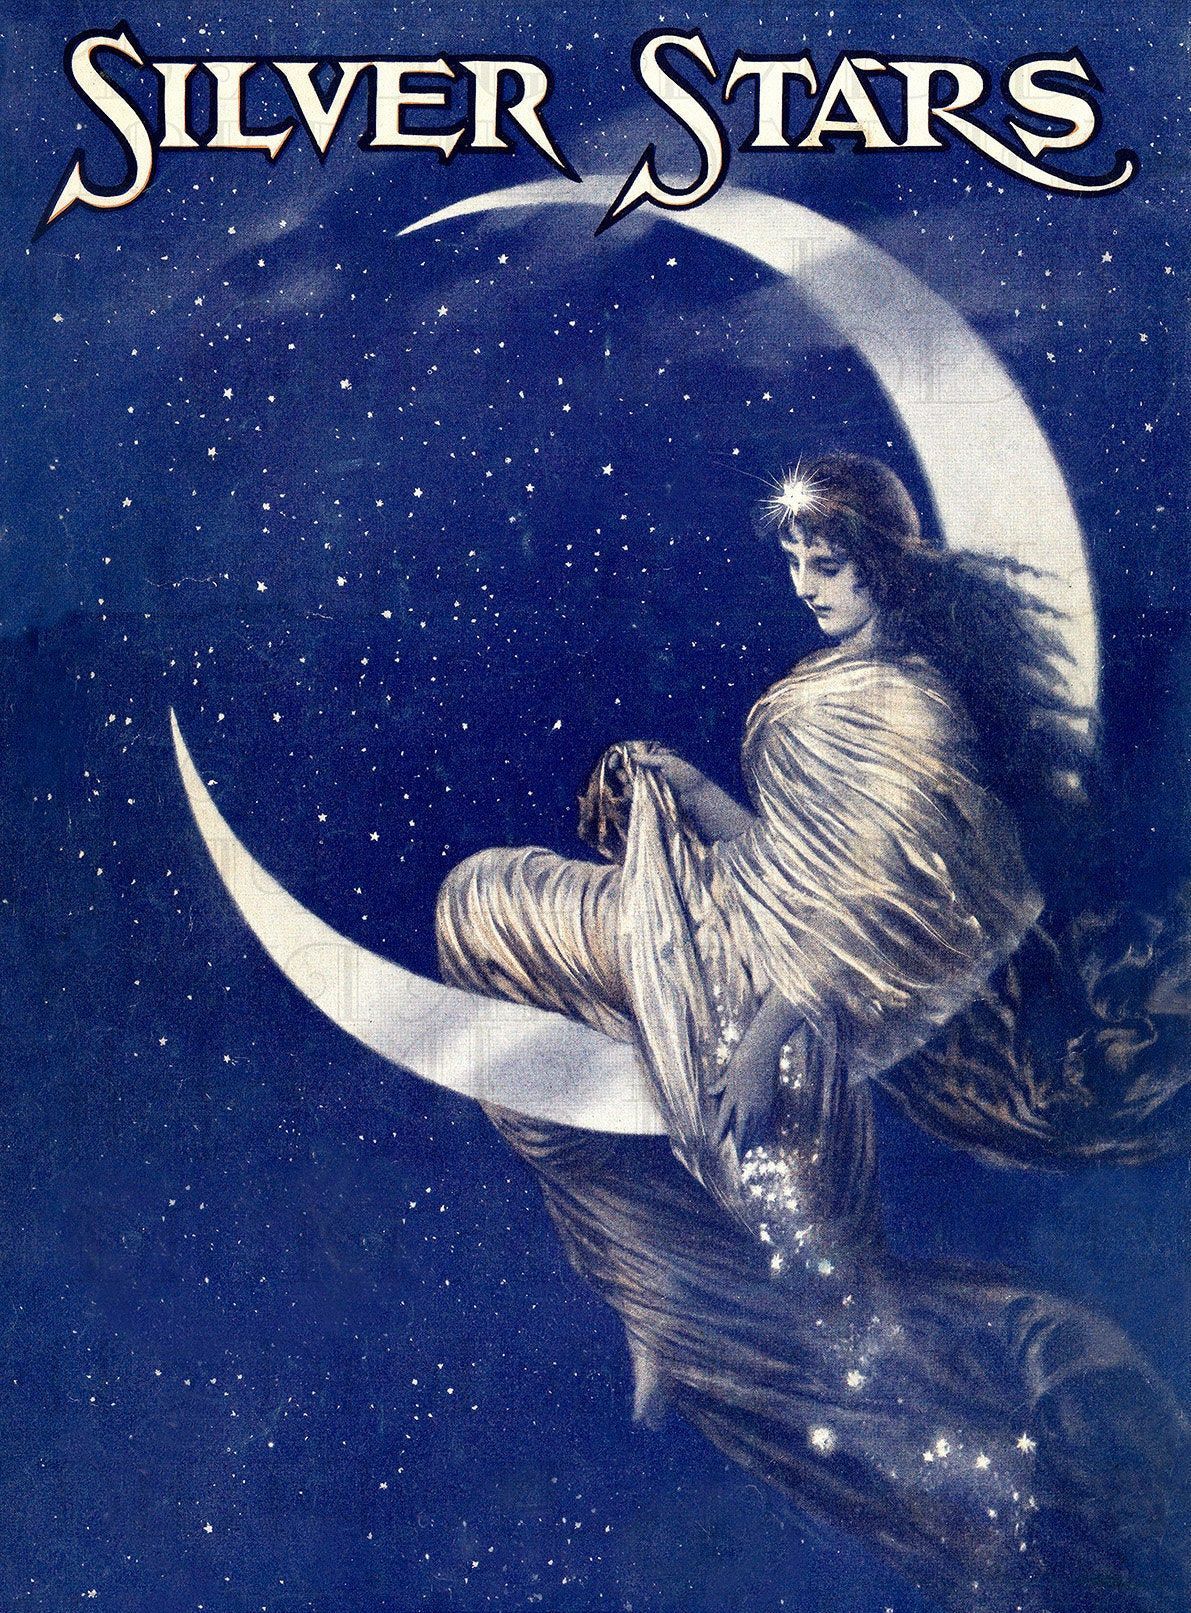 Amazing Art NOUVEAU Lady On Half Moon. Silver Stars! Vintage Moon Illustration. Vintage Digital Art Nouveu ILLUSTRATION. Digital Download -   14 beauty Art moon ideas